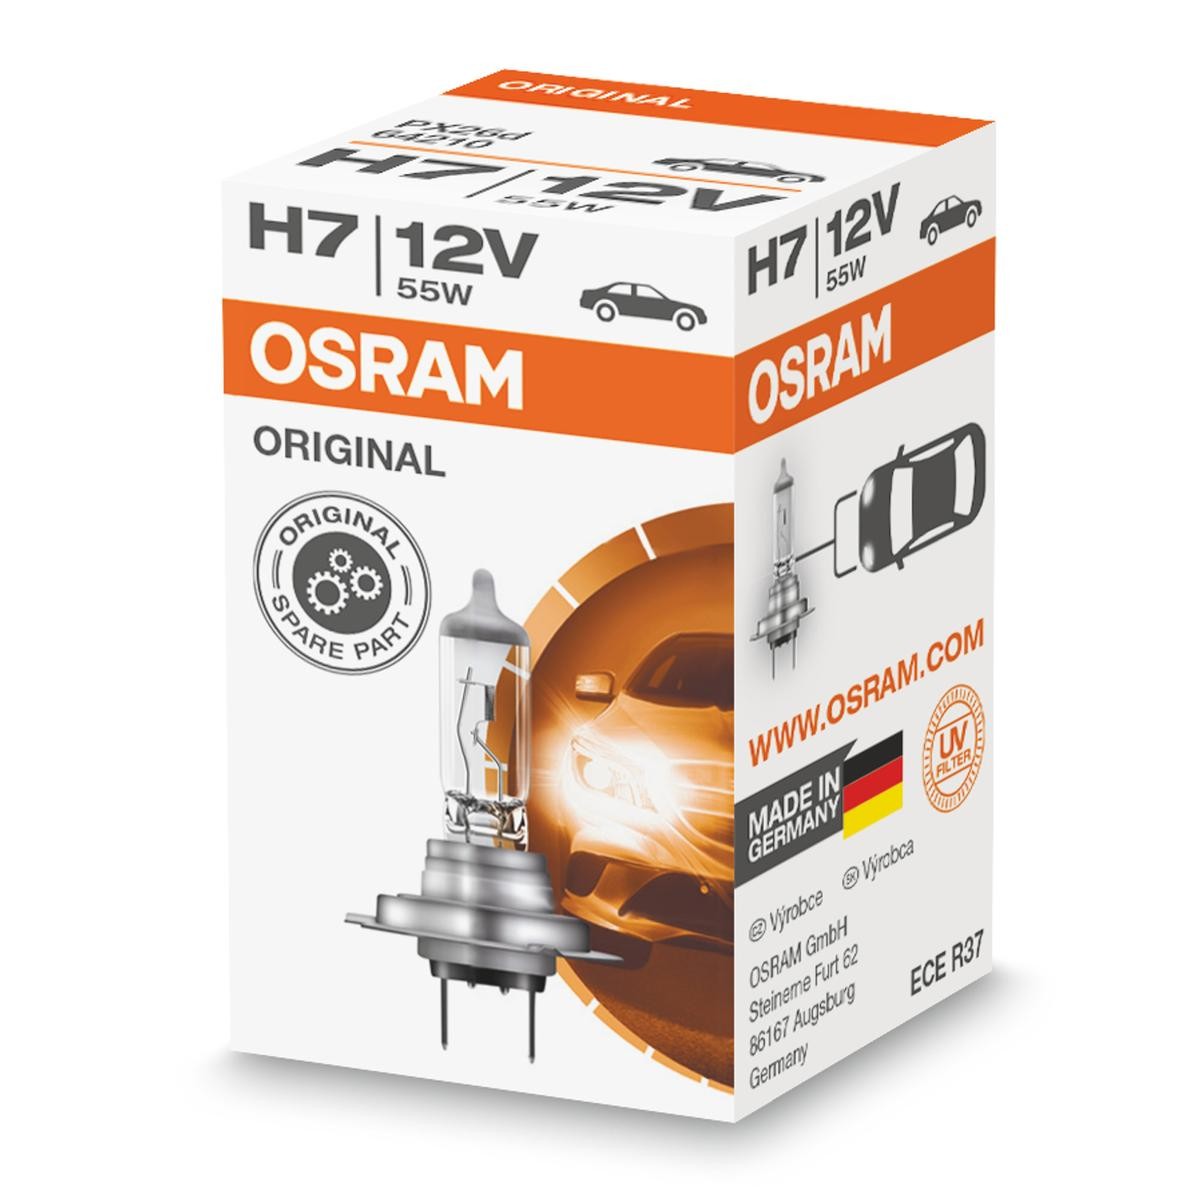 Alpina ricambi di qualità originale 
H7 OSRAM 64210L